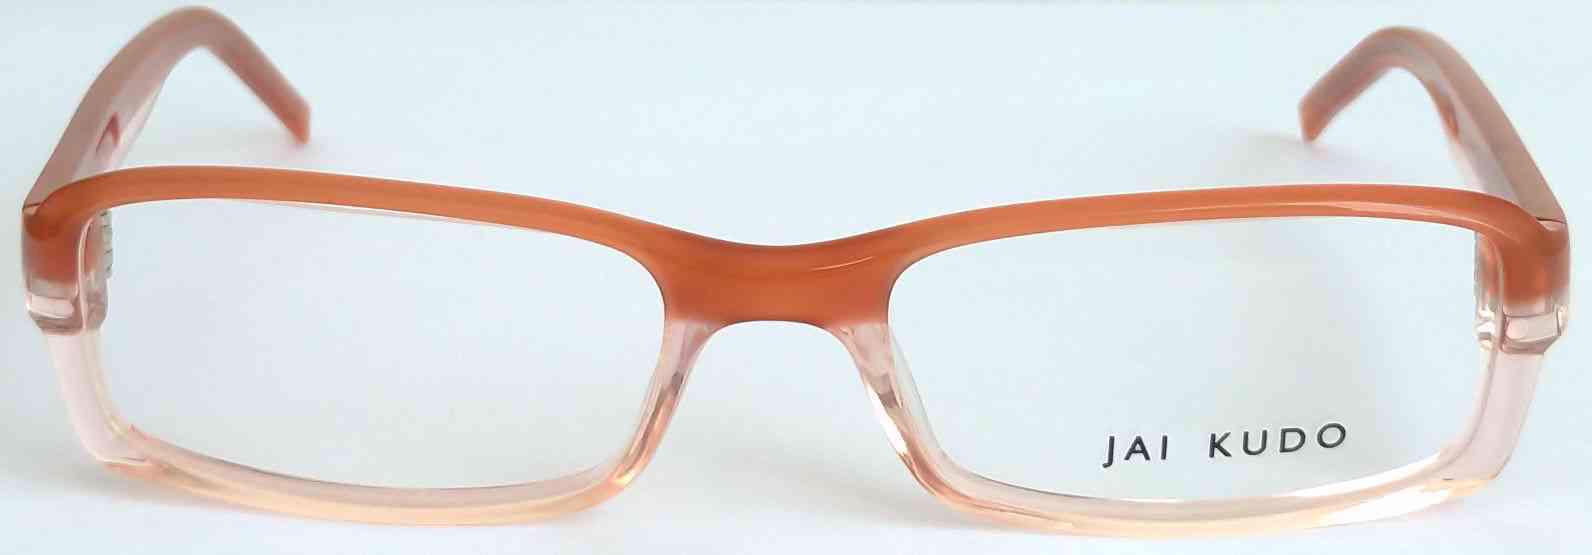 JAI KUDO 1716 P13 dámské brýlové obruby 50-17-140 MOC:2600Kč - foto 5